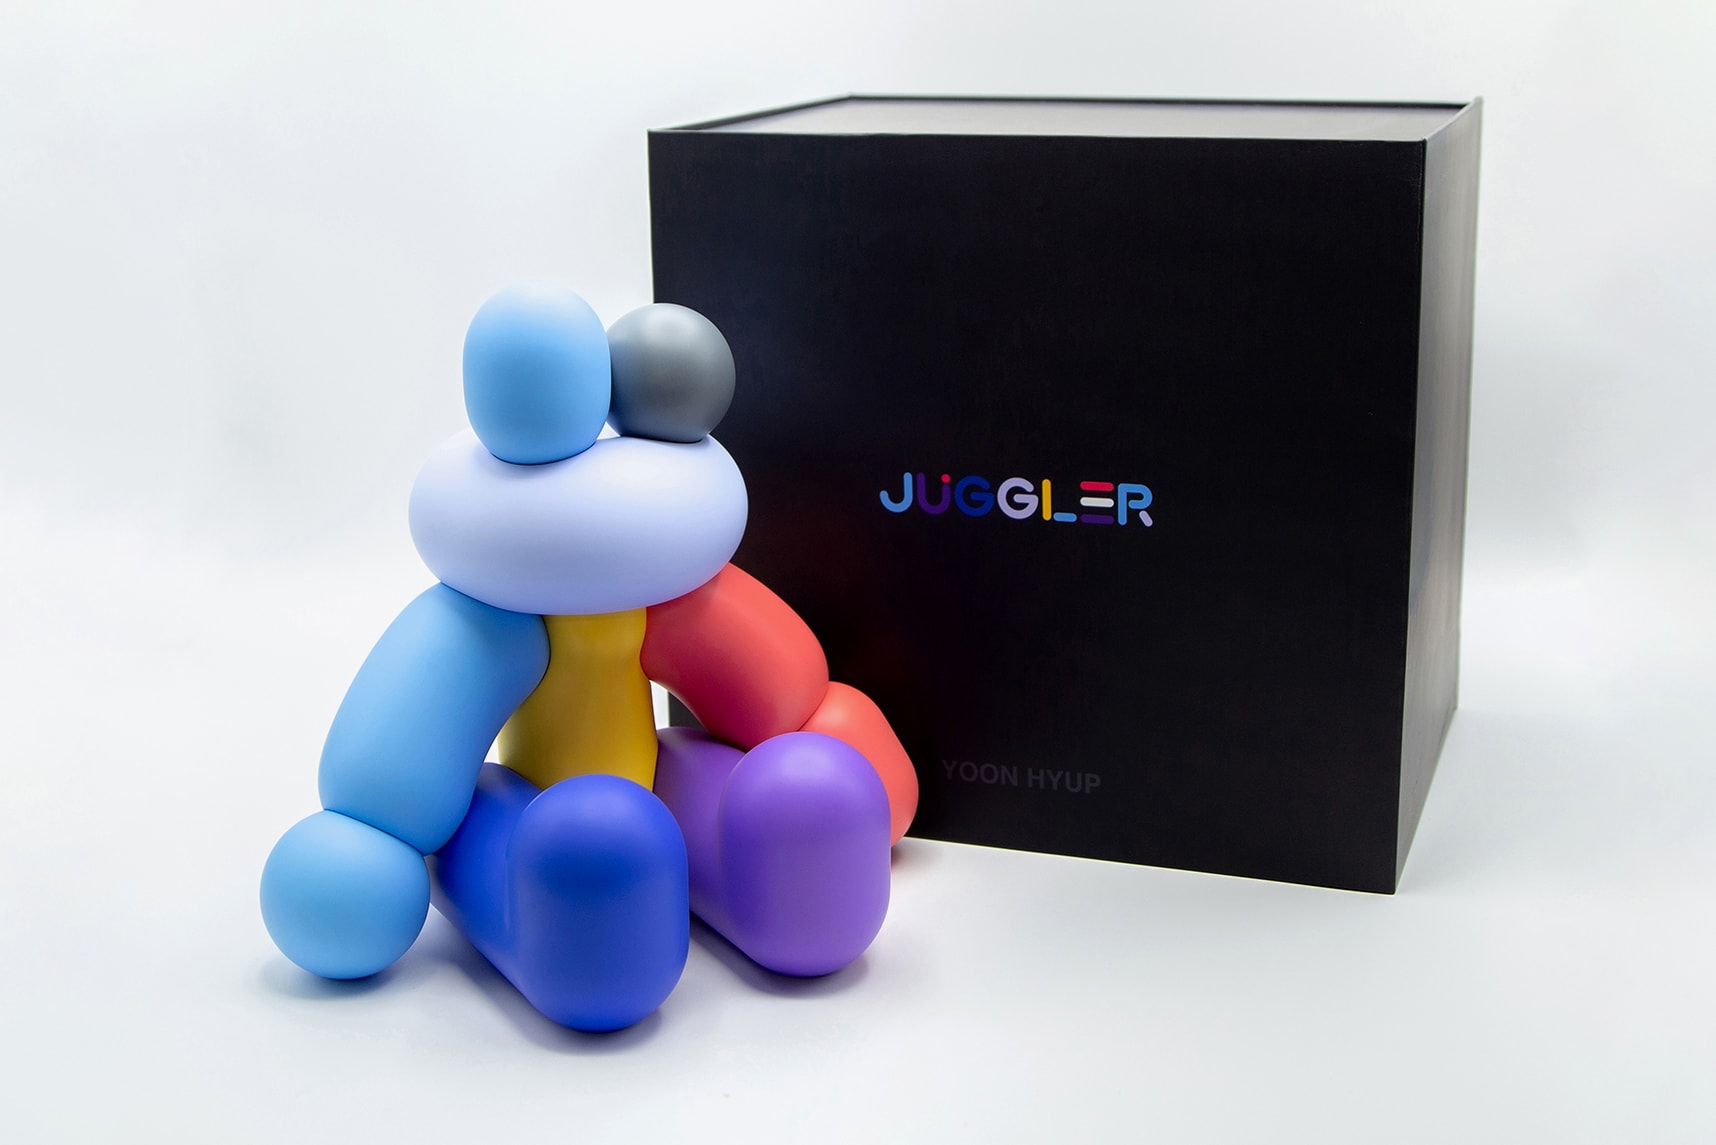 韓国人アーティストのユーン・ヒョプが新作フィギュアを数量限定で発売 yoon hyup juggler collectible figure artwork